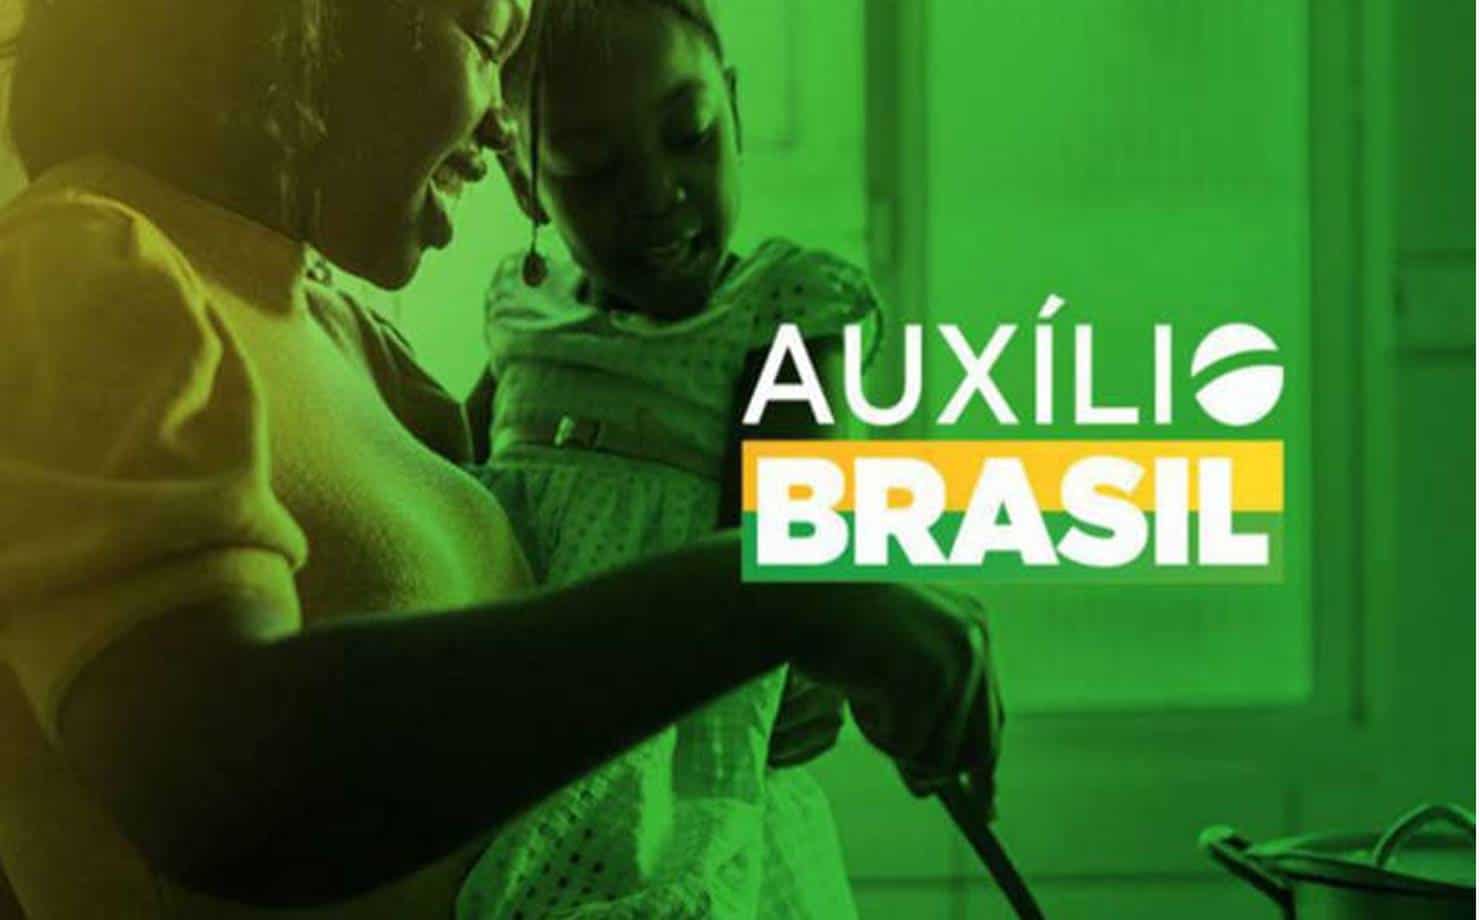 Caixa paga hoje o Auxílio Brasil para famílias cadastradas com NIS final 3